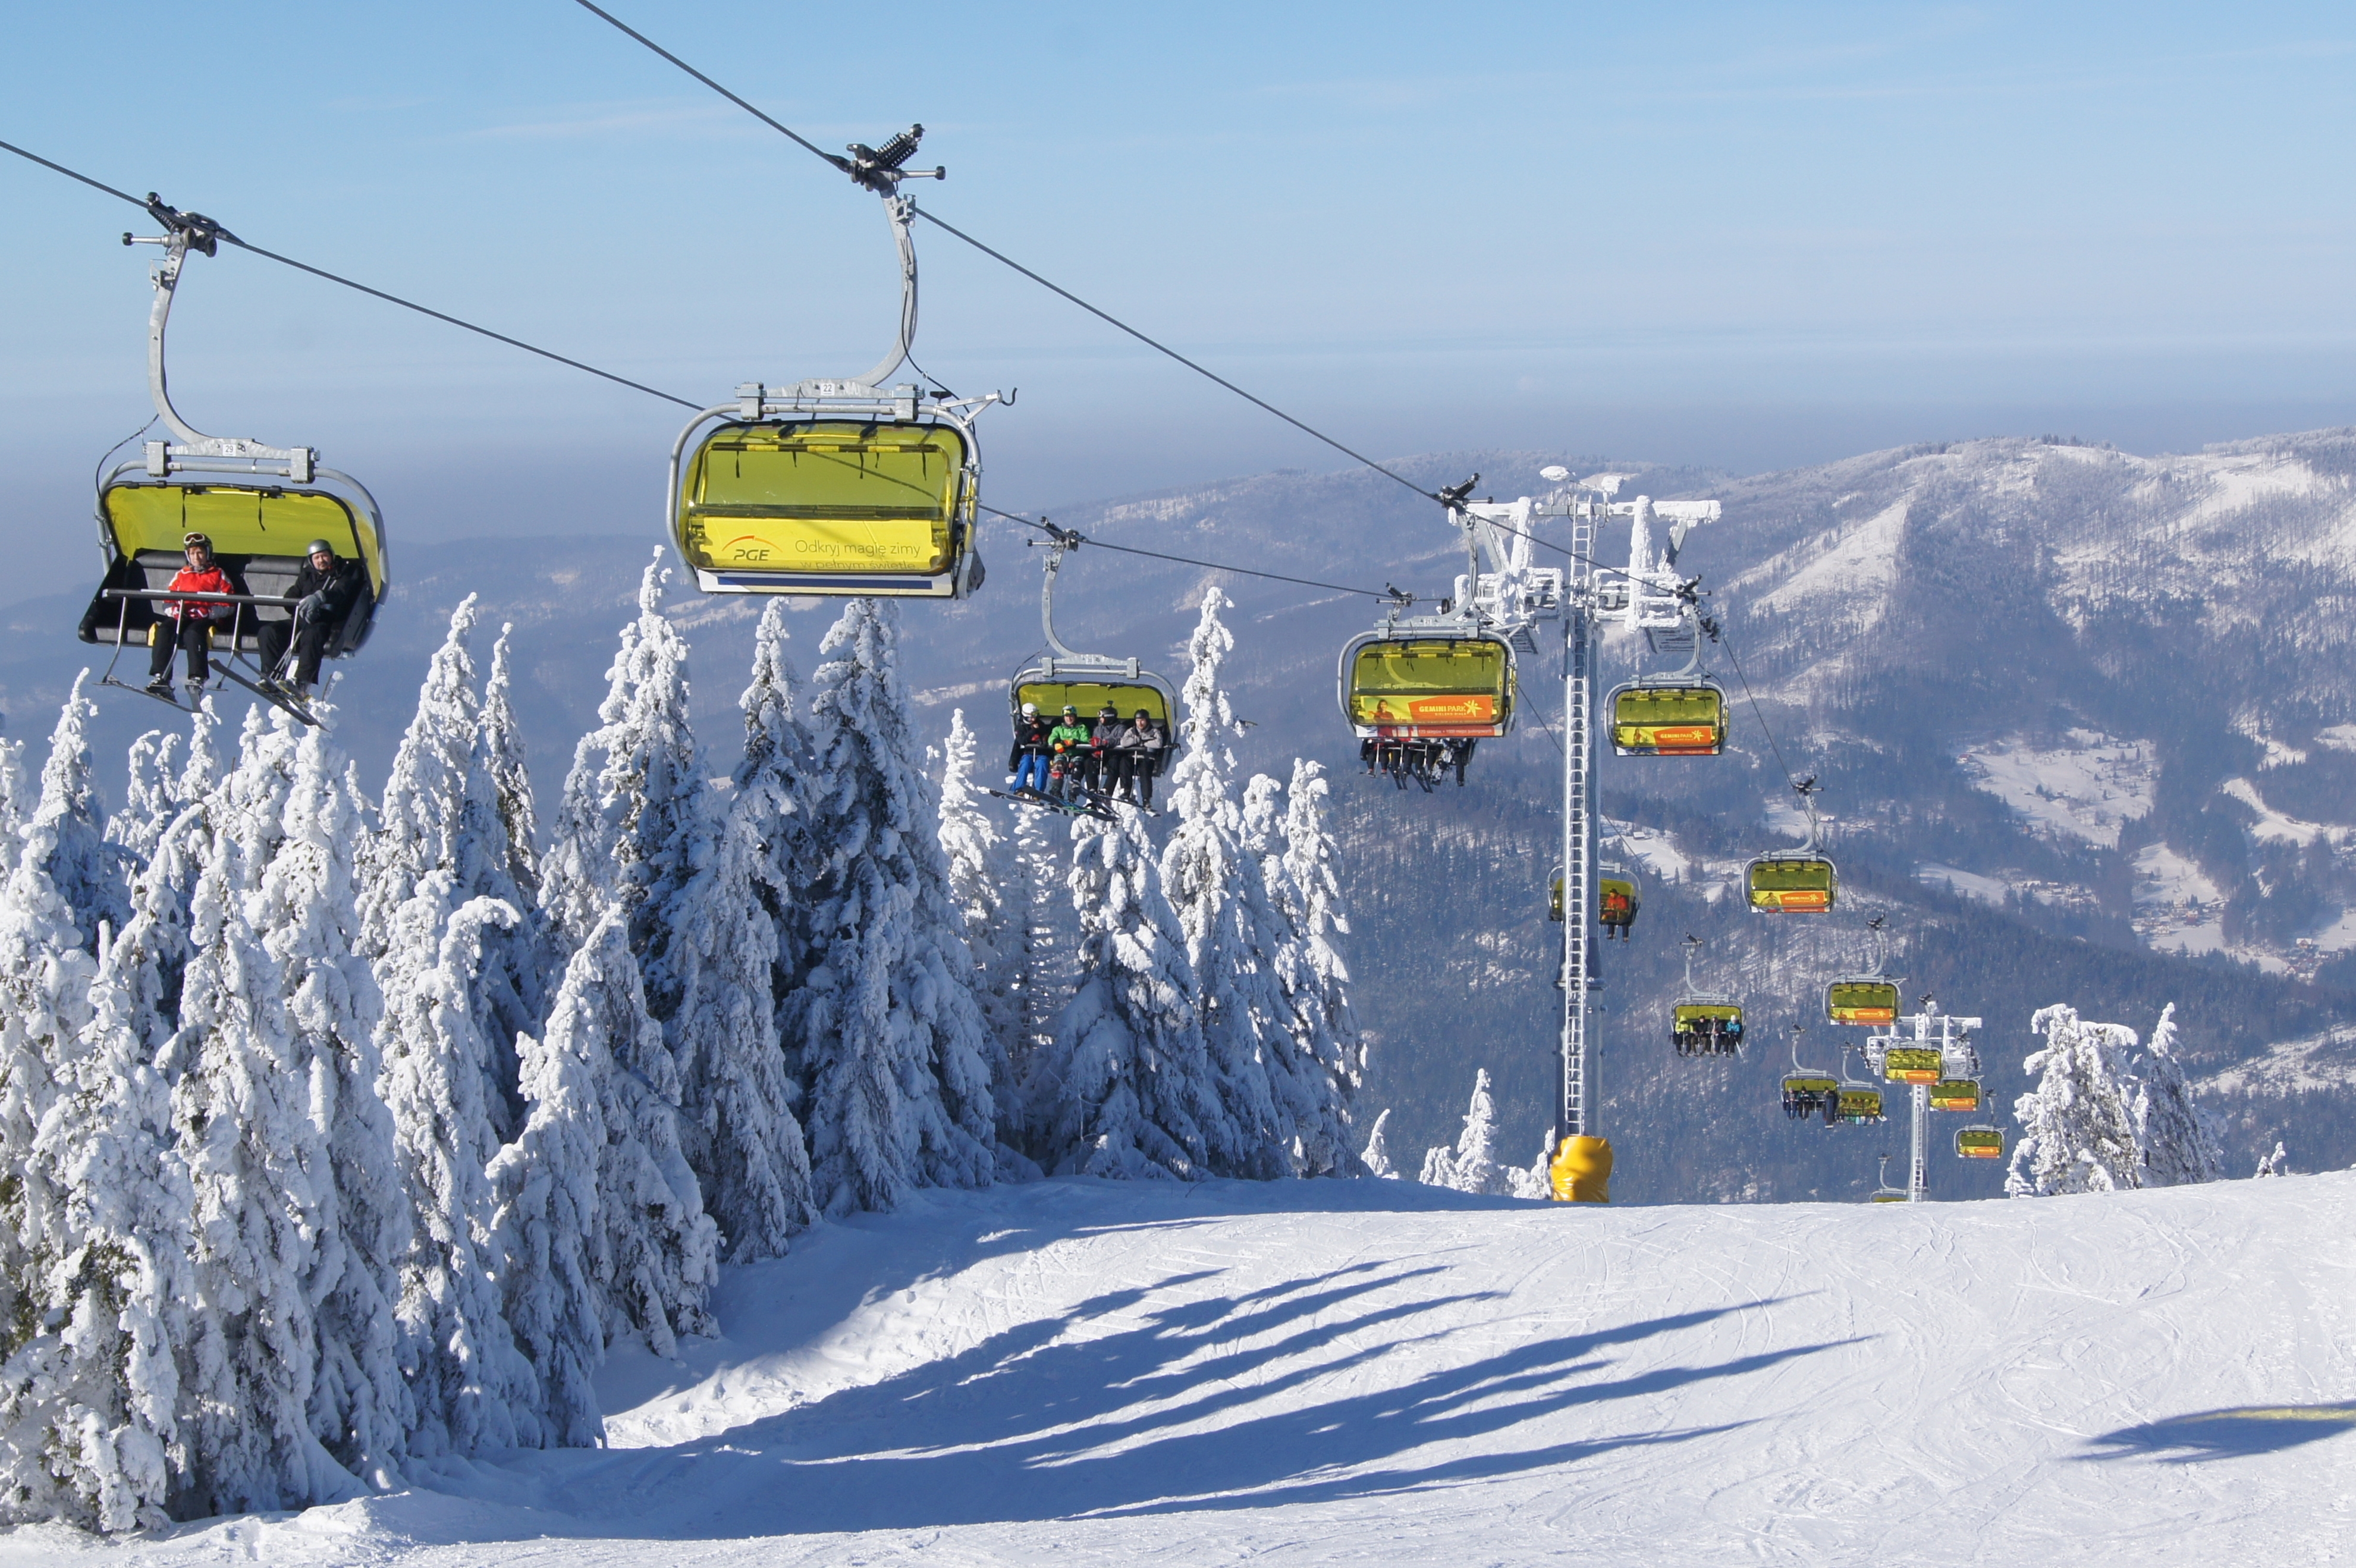 ski-resort-szczyrk-photos-topskiresort